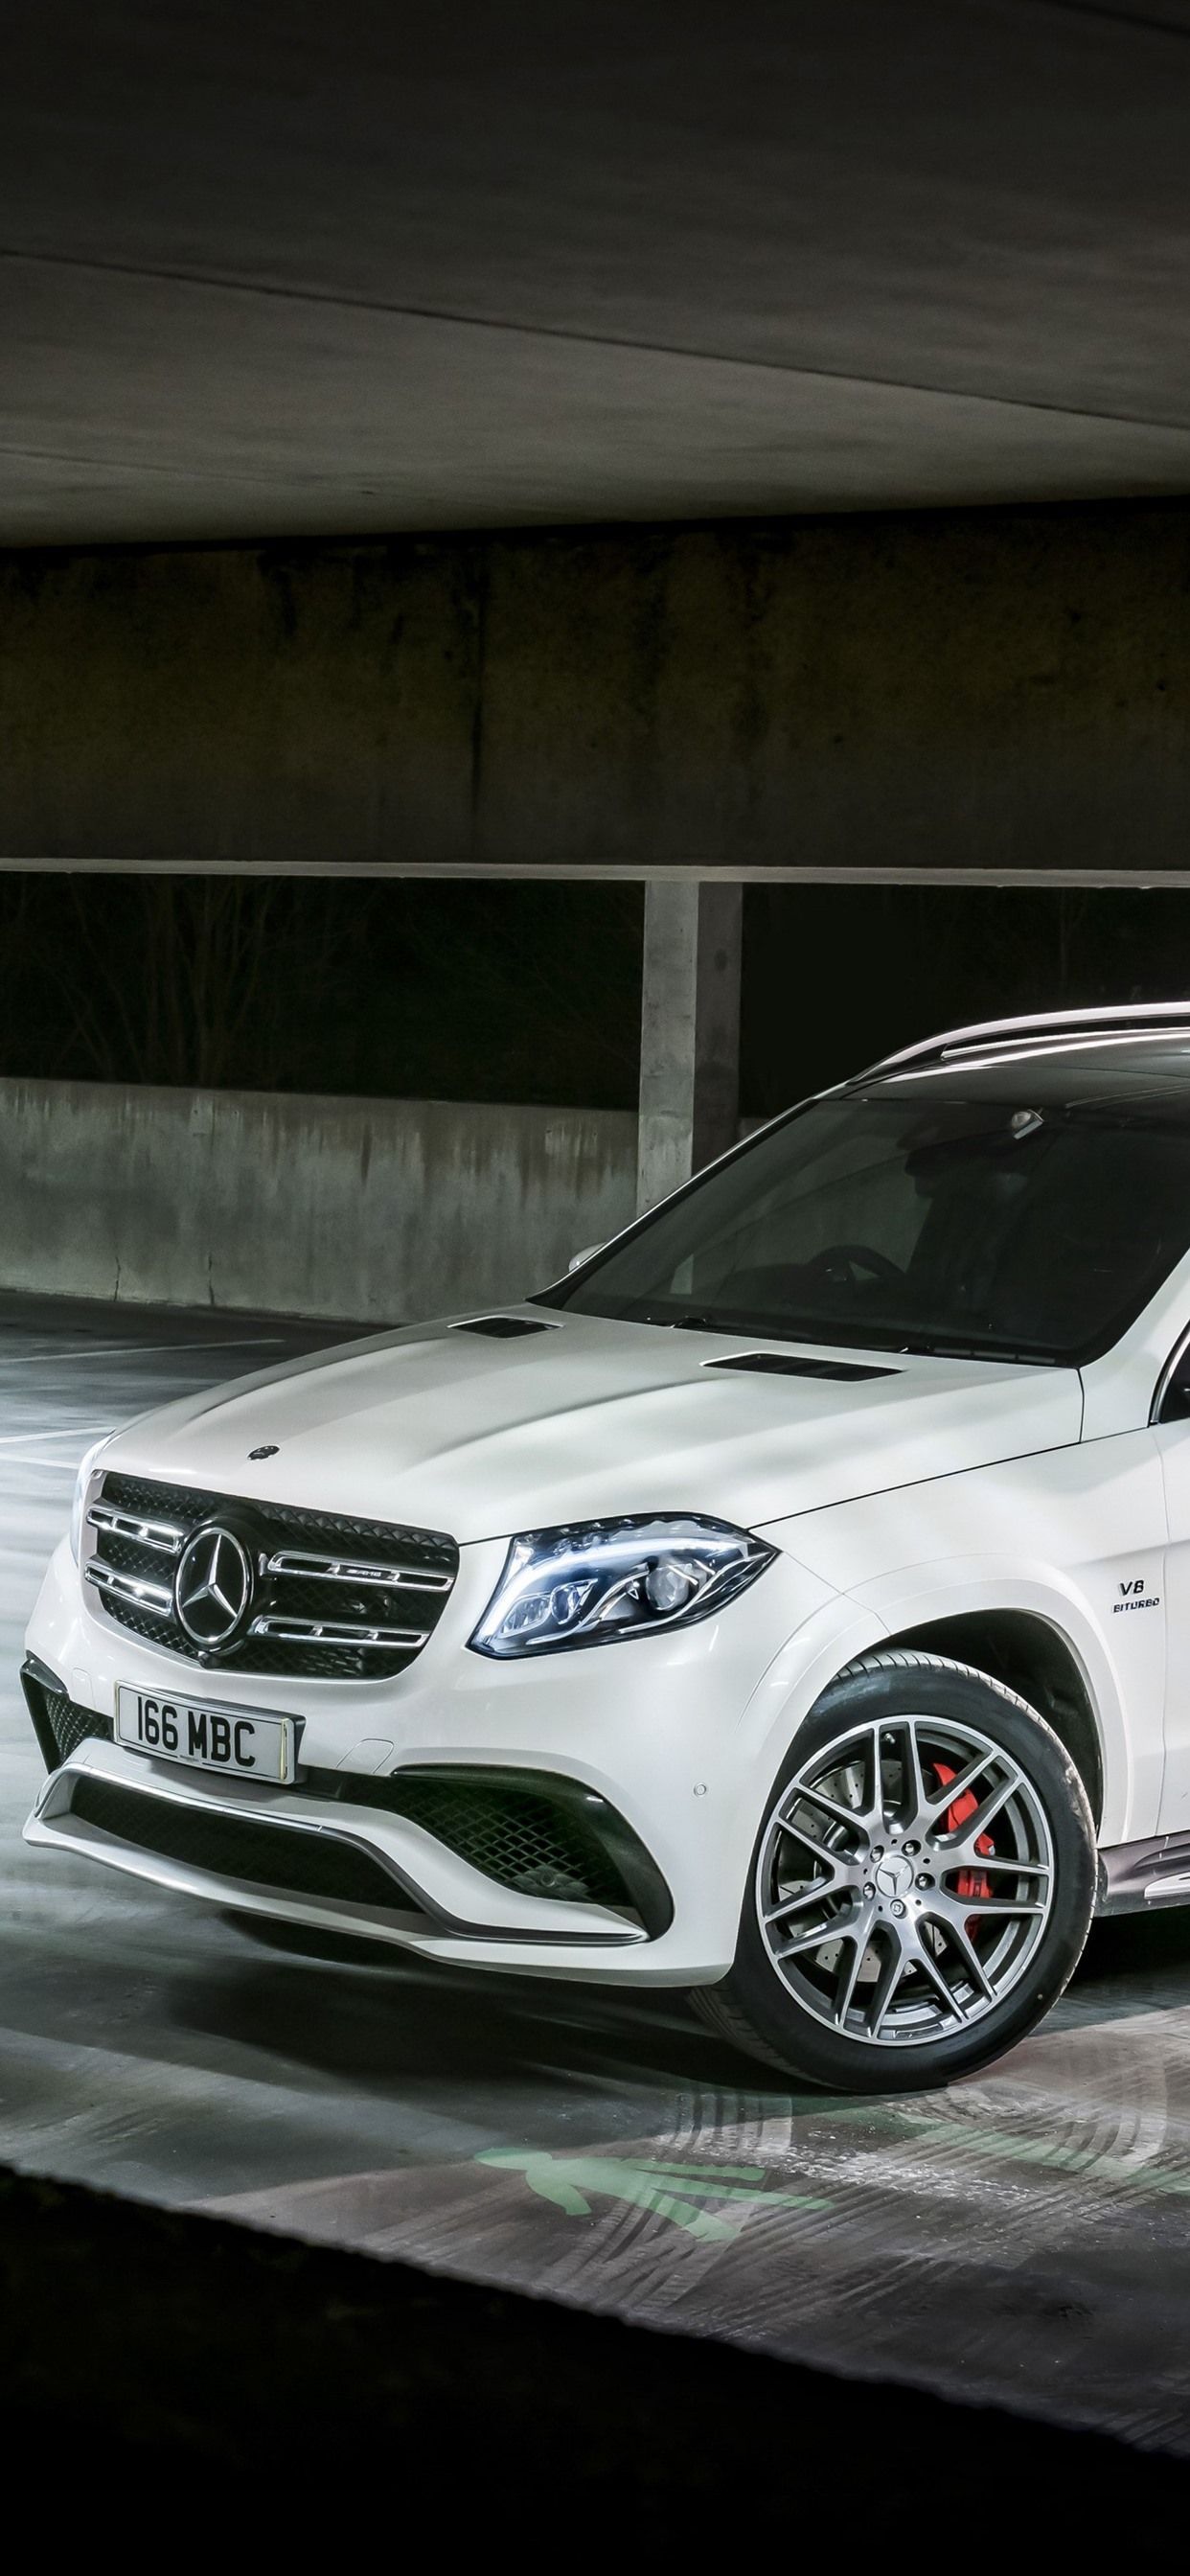  AMG Hintergrundbild 1242x2688. Mercedes Benz AMG X166 Weißes SUV Auto 3840x2160 UHD 4K Hintergrundbilder, HD, Bild